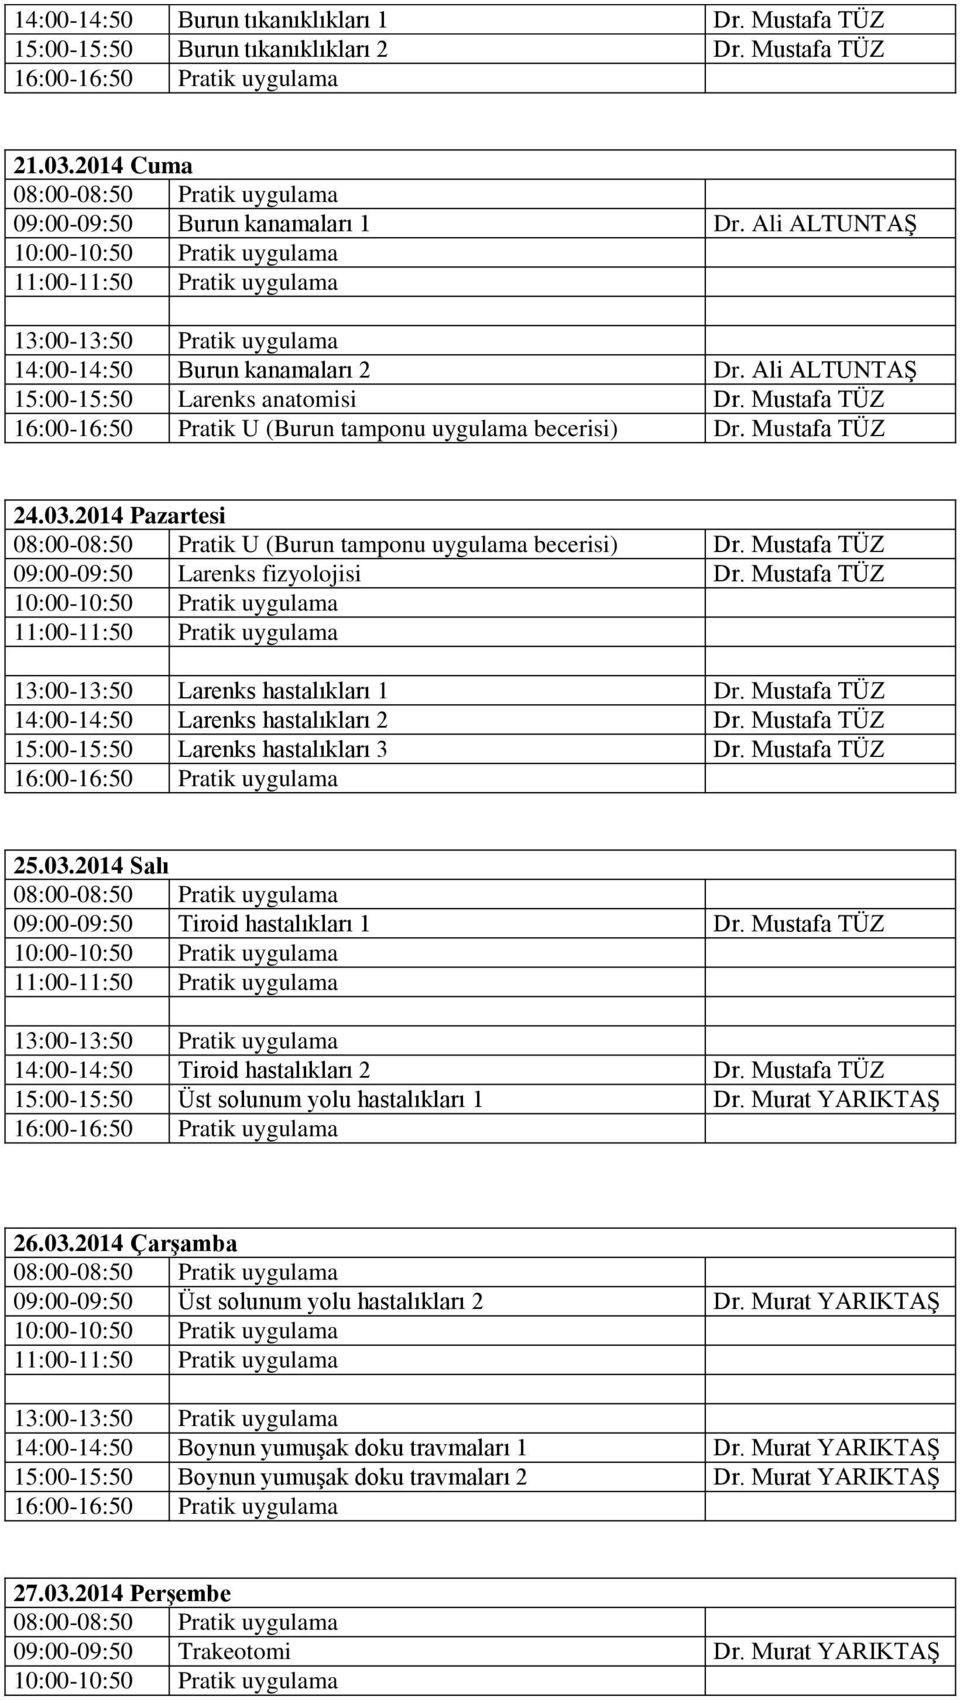 2014 Pazartesi 08:00-08:50 Pratik U (Burun tamponu uygulama becerisi) Dr. Mustafa TÜZ 09:00-09:50 Larenks fizyolojisi Dr. Mustafa TÜZ 13:00-13:50 Larenks hastalıkları 1 Dr.